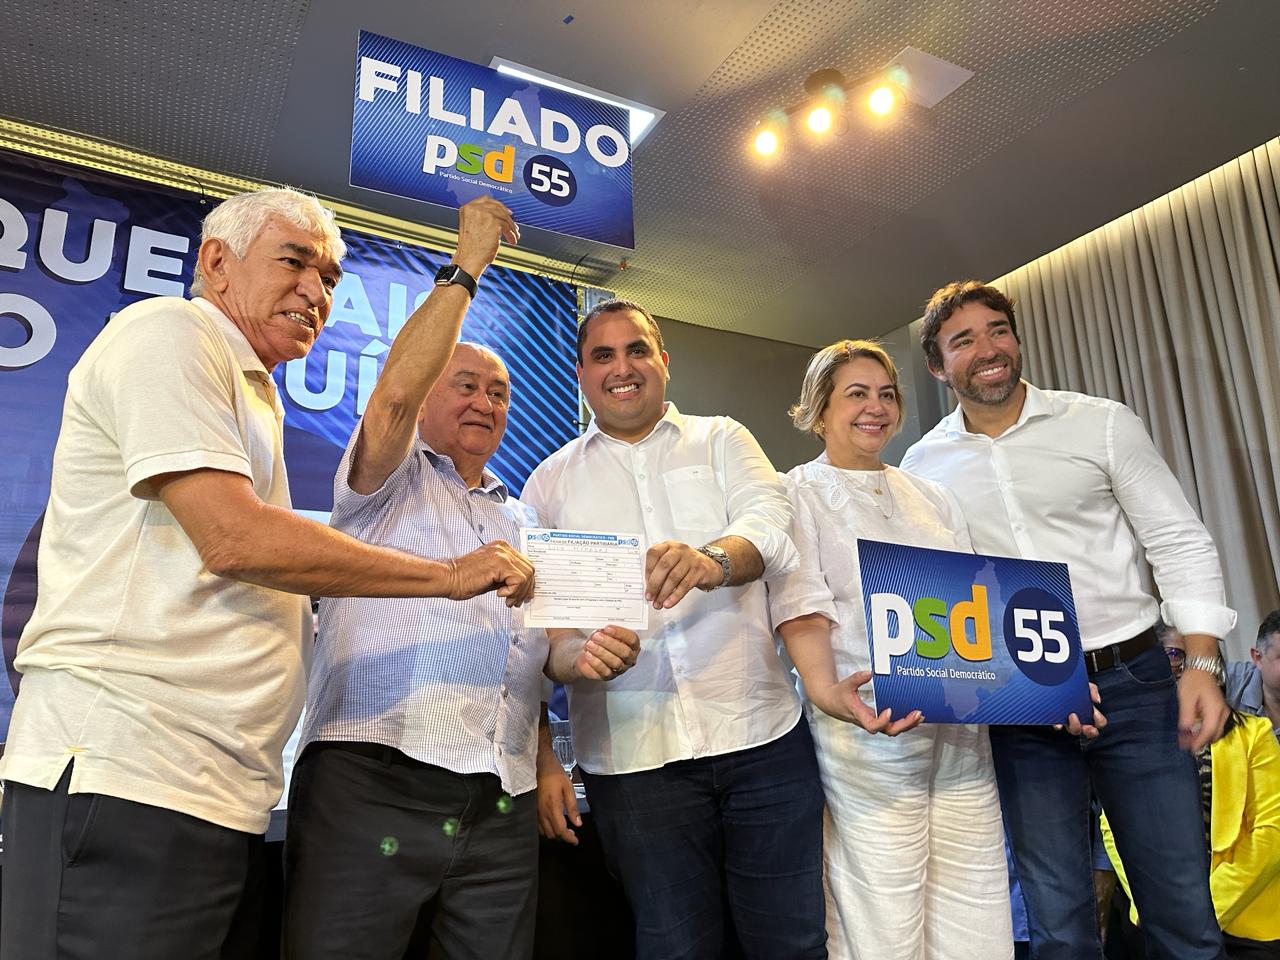 PSD filia lideranças do Piauí durante evento na zona Leste de Teresina